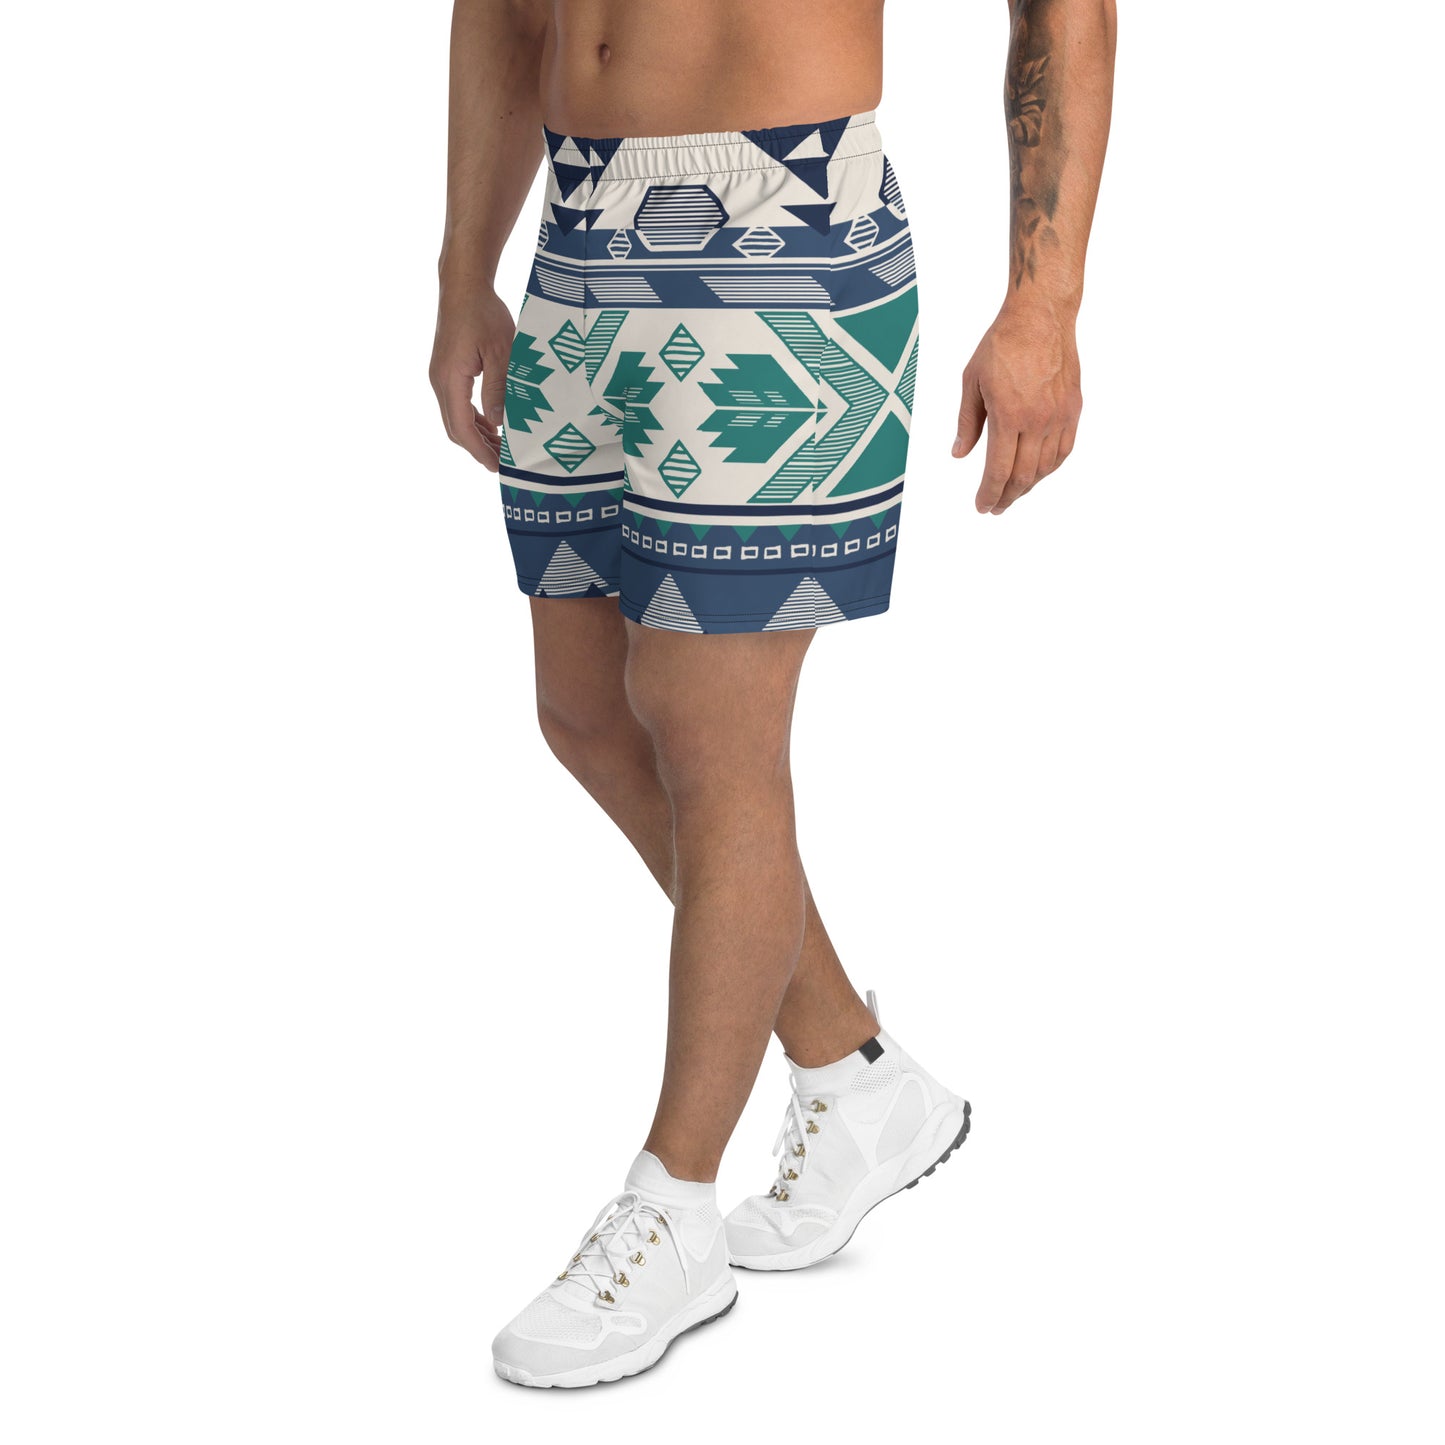 Printed Tribal Athletic Long Shorts